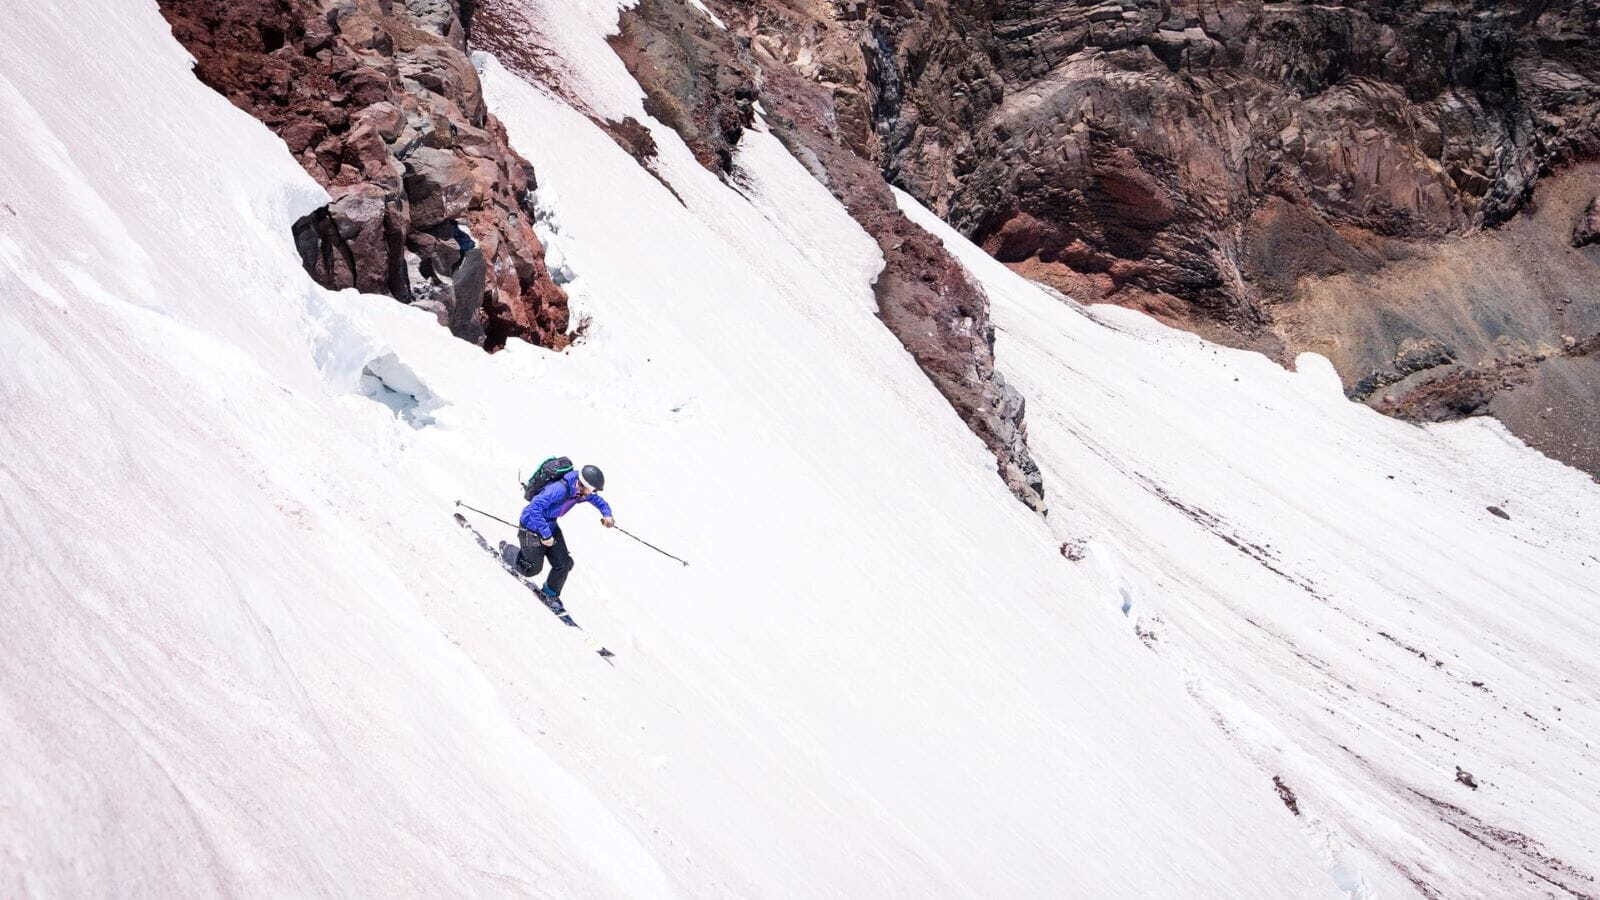 اسکی در کوهستان